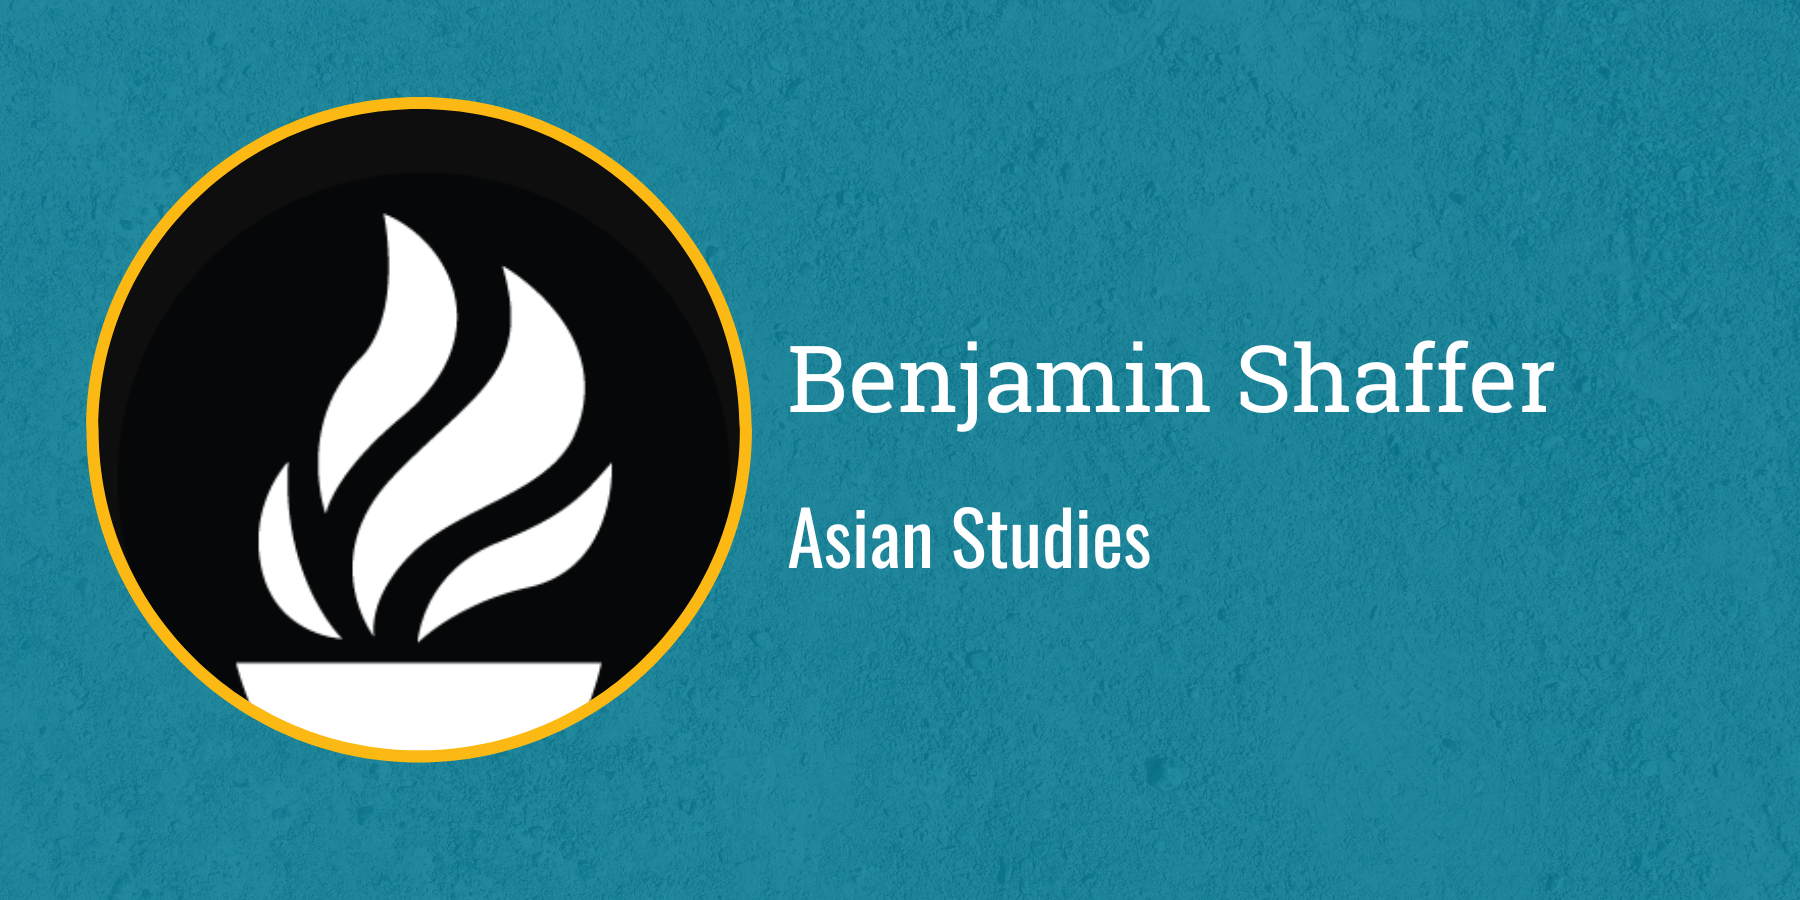 Benjamin Shaffer
Asian Studies